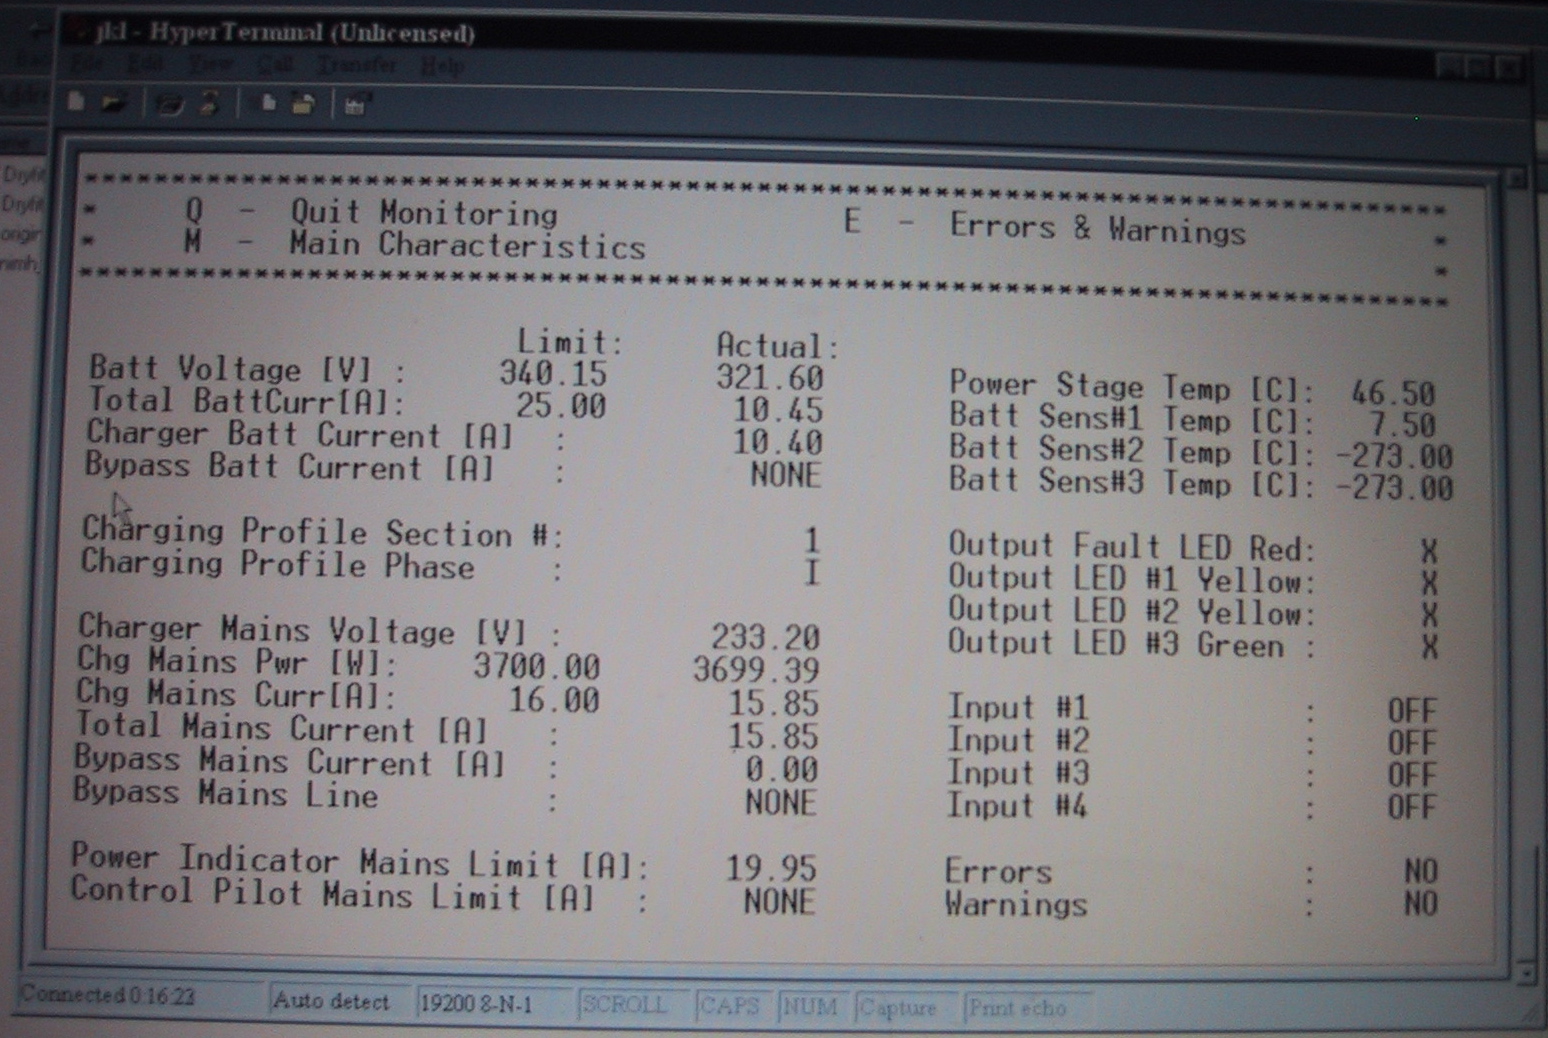 Charger monitor screenshot.